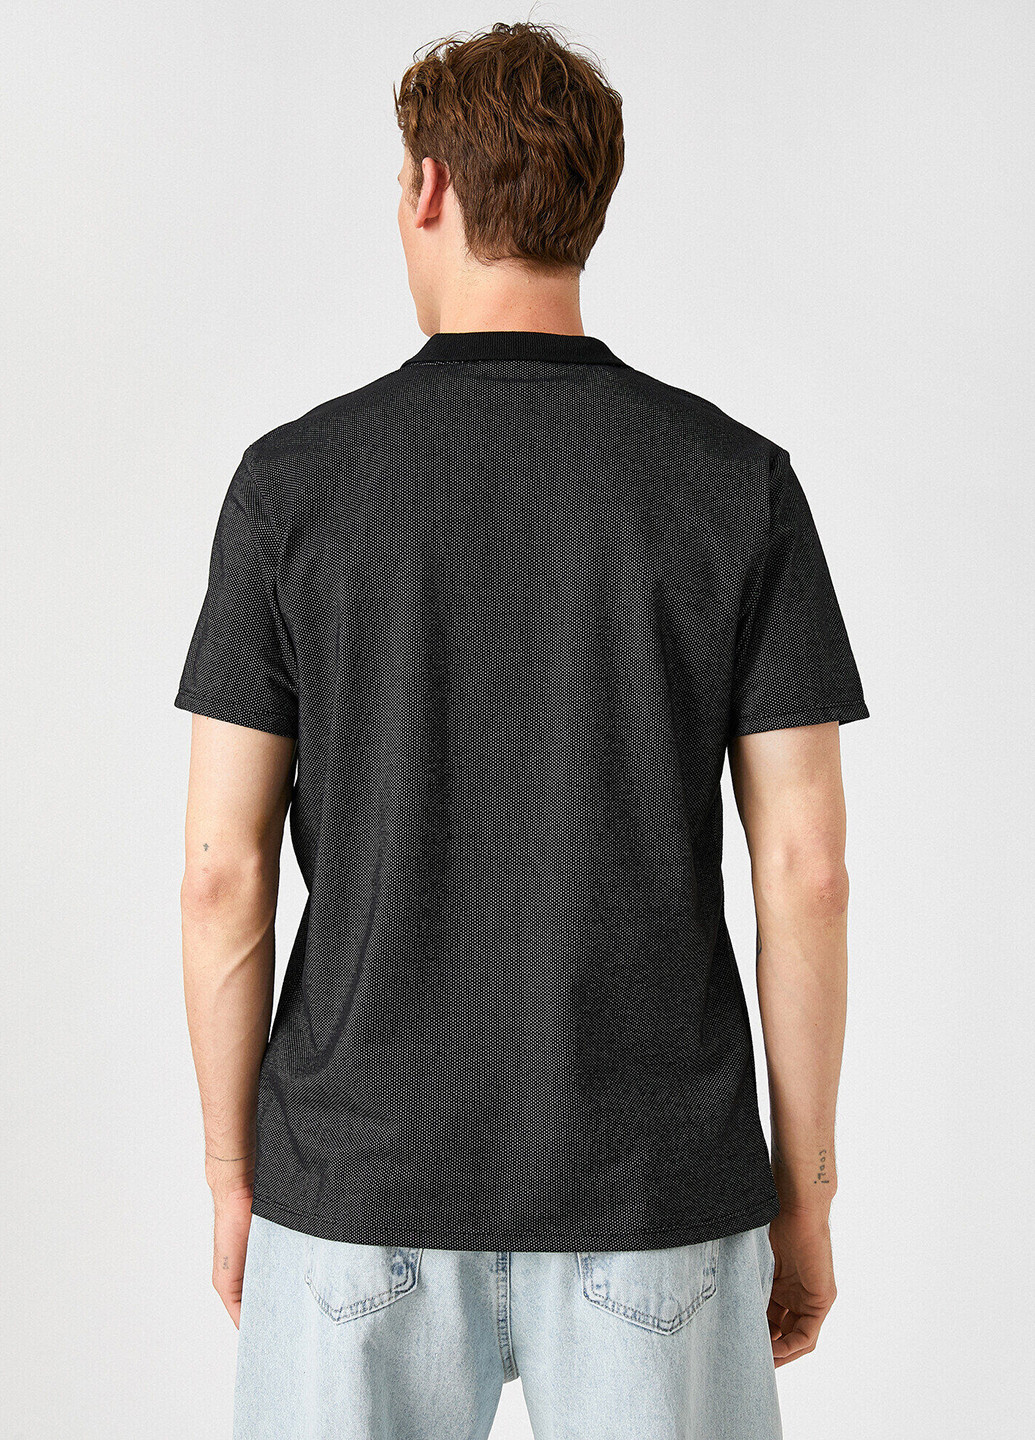 Черная футболка-поло для мужчин KOTON с узором «перец с солью»